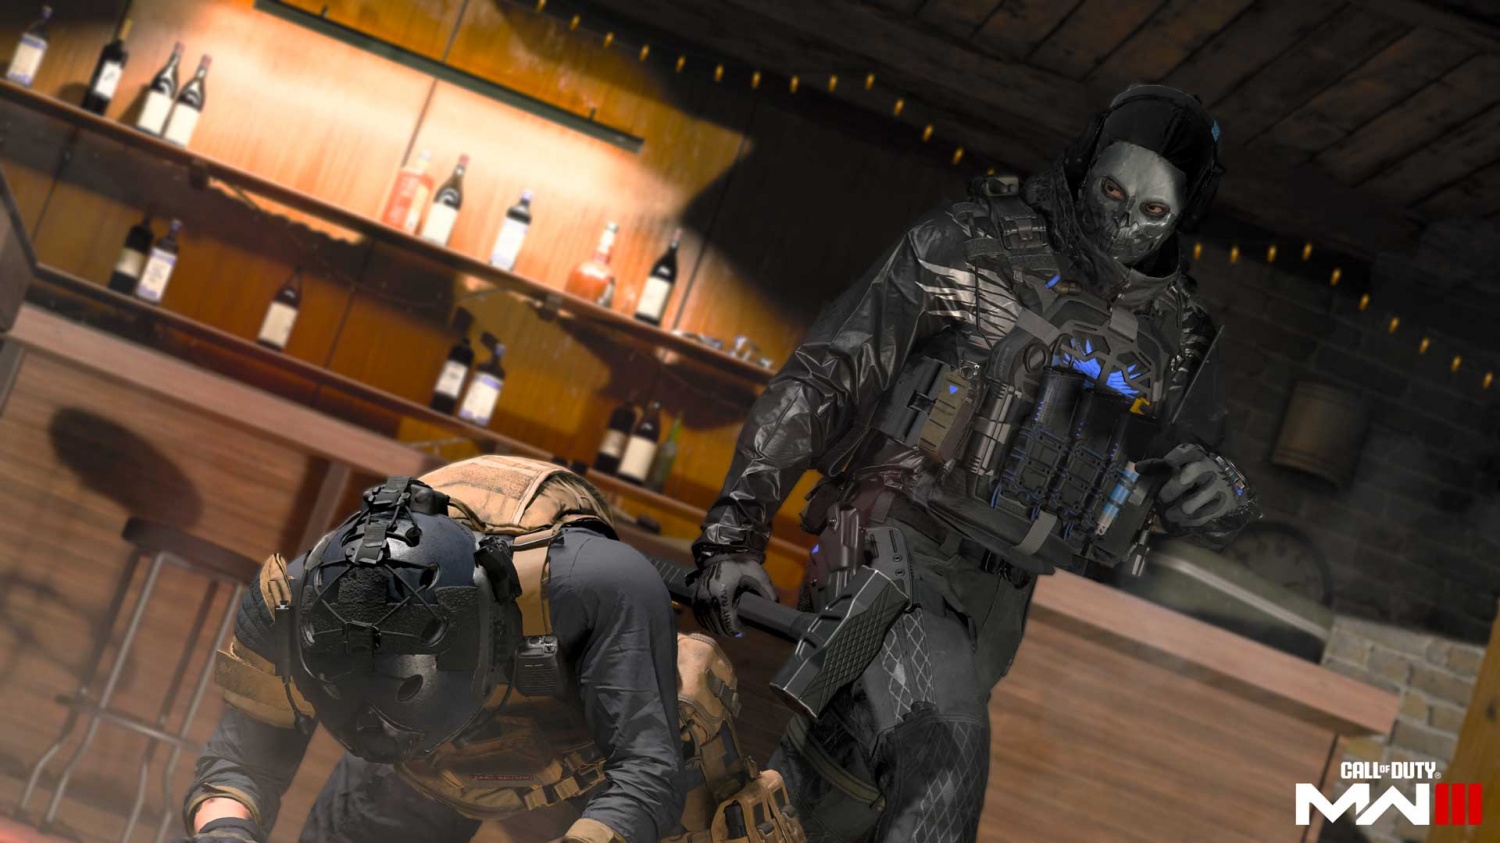 Microsoft Deal For 'Call Of Duty's Activision Slammed by UK Regulator –  Deadline